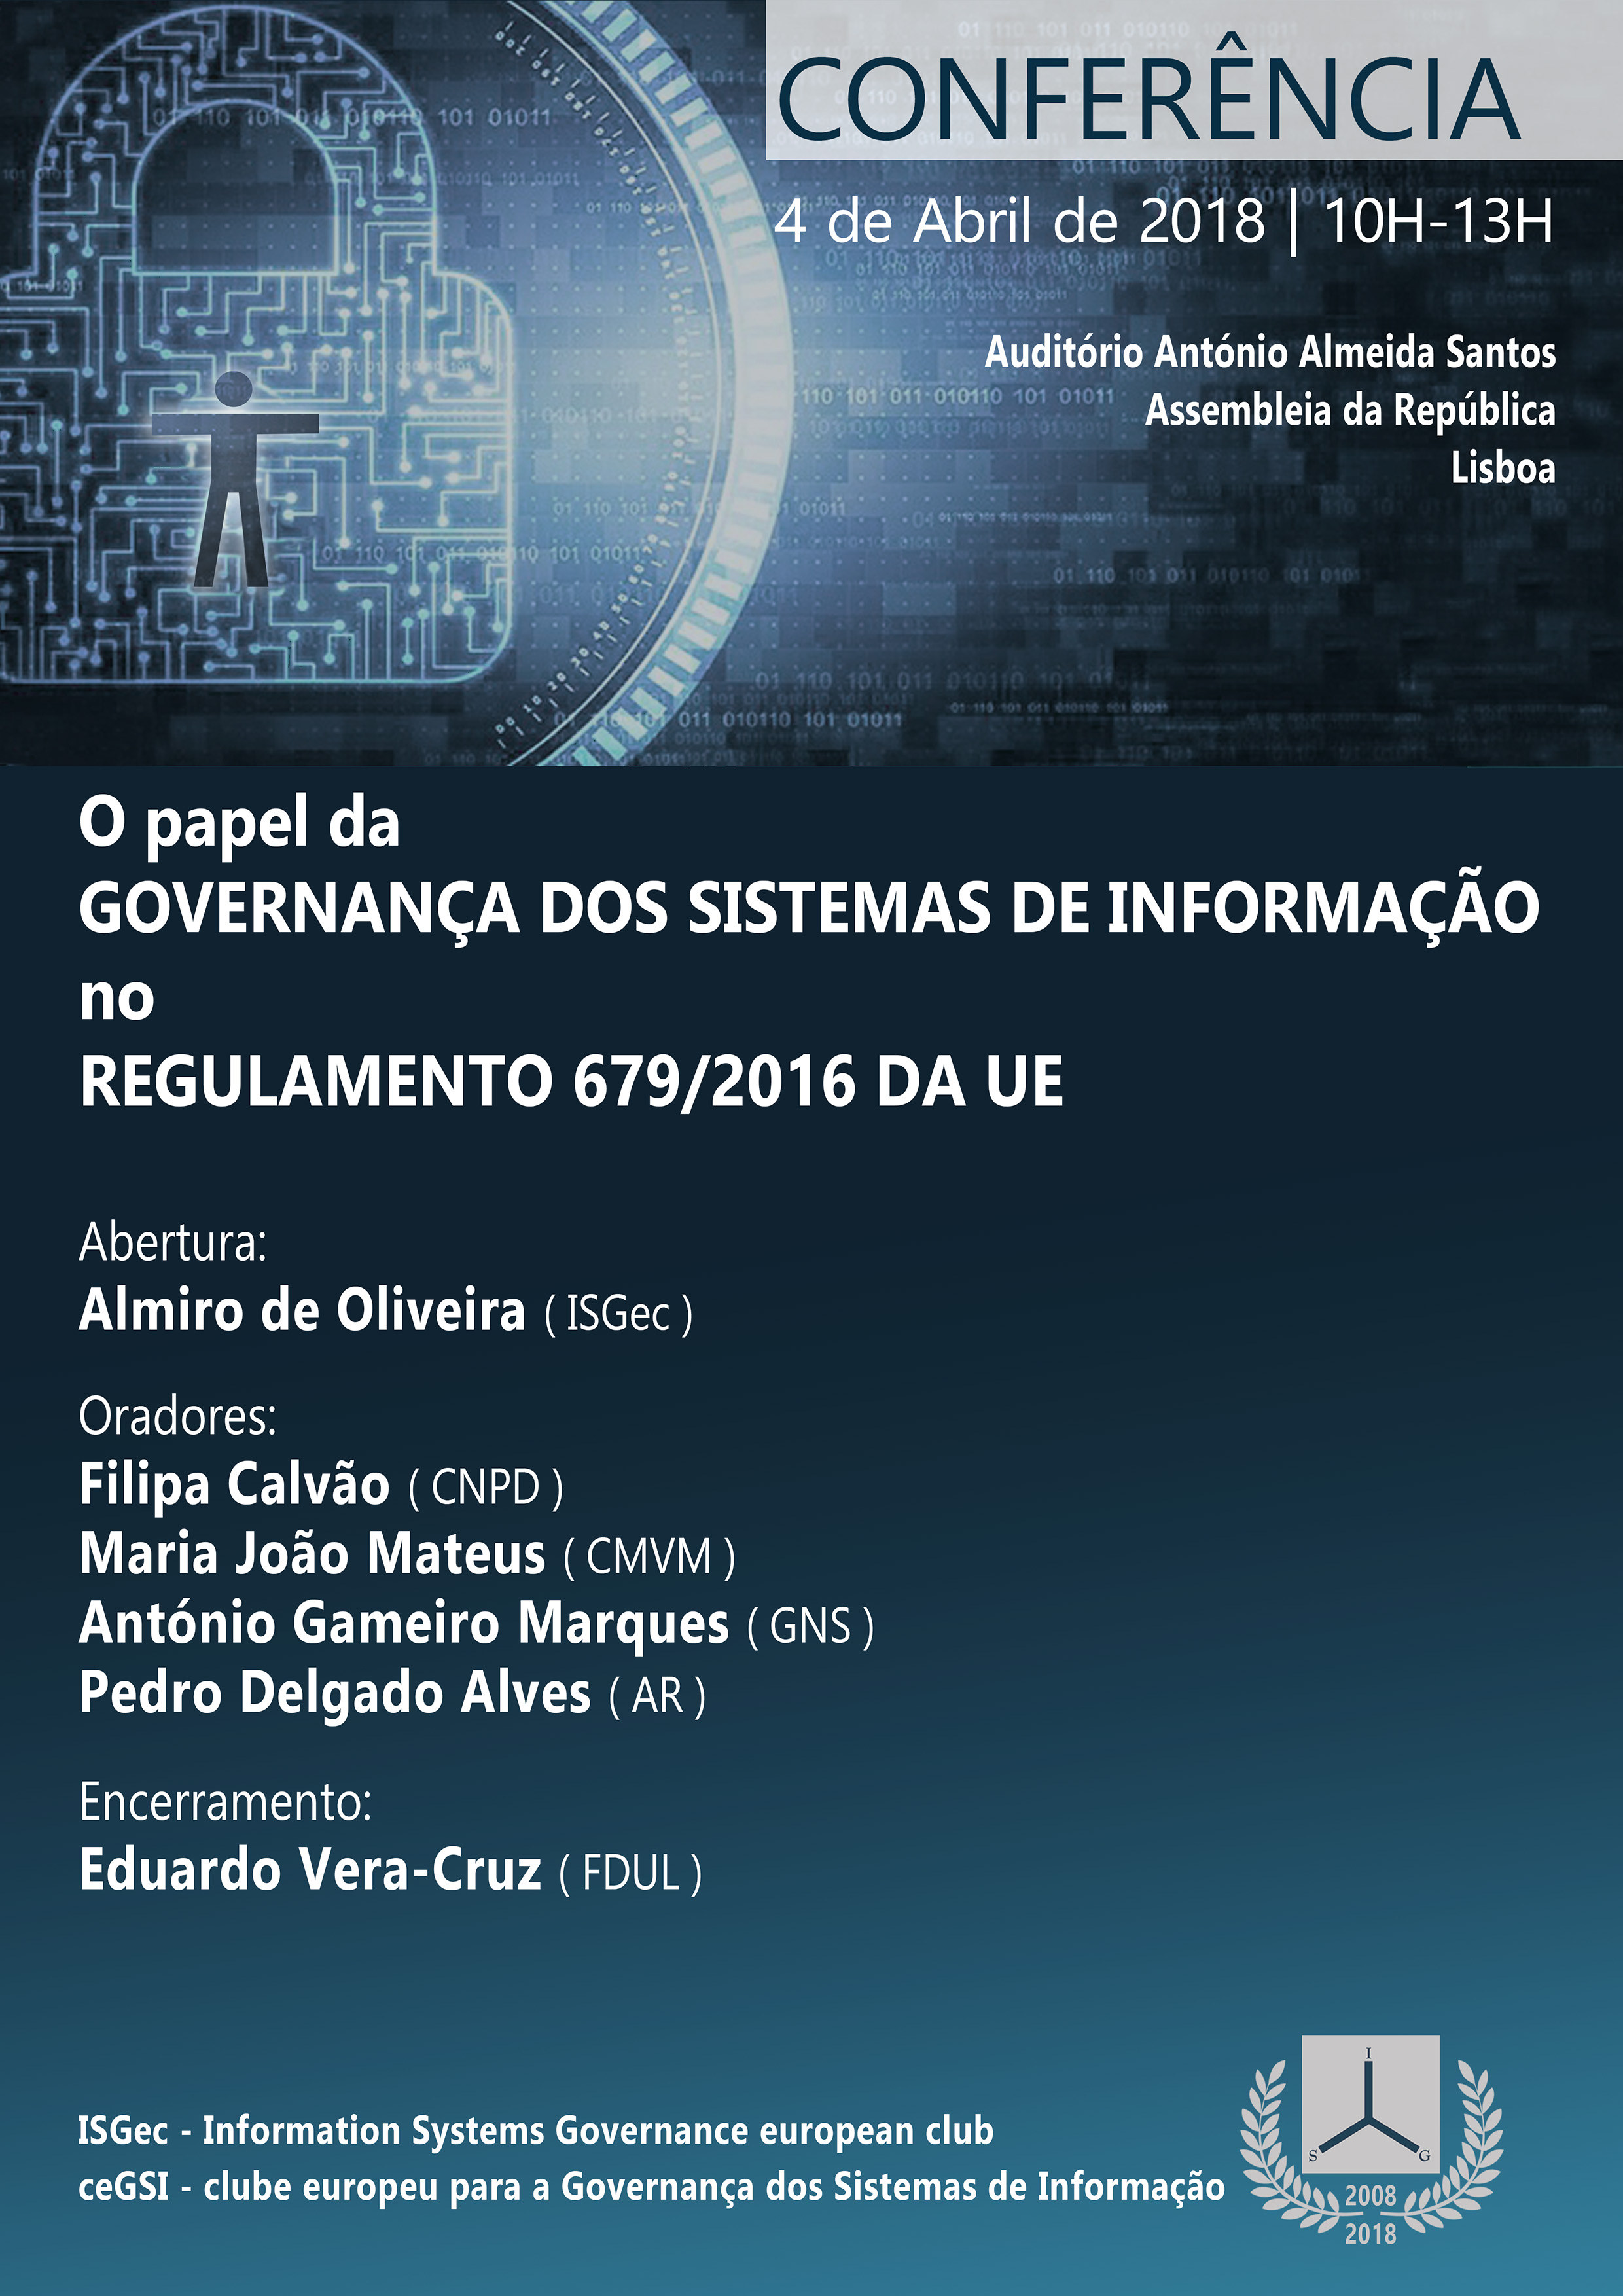 O Papel da Governança dos Sistemas de Informação no Regulamento 679/2016 da UE